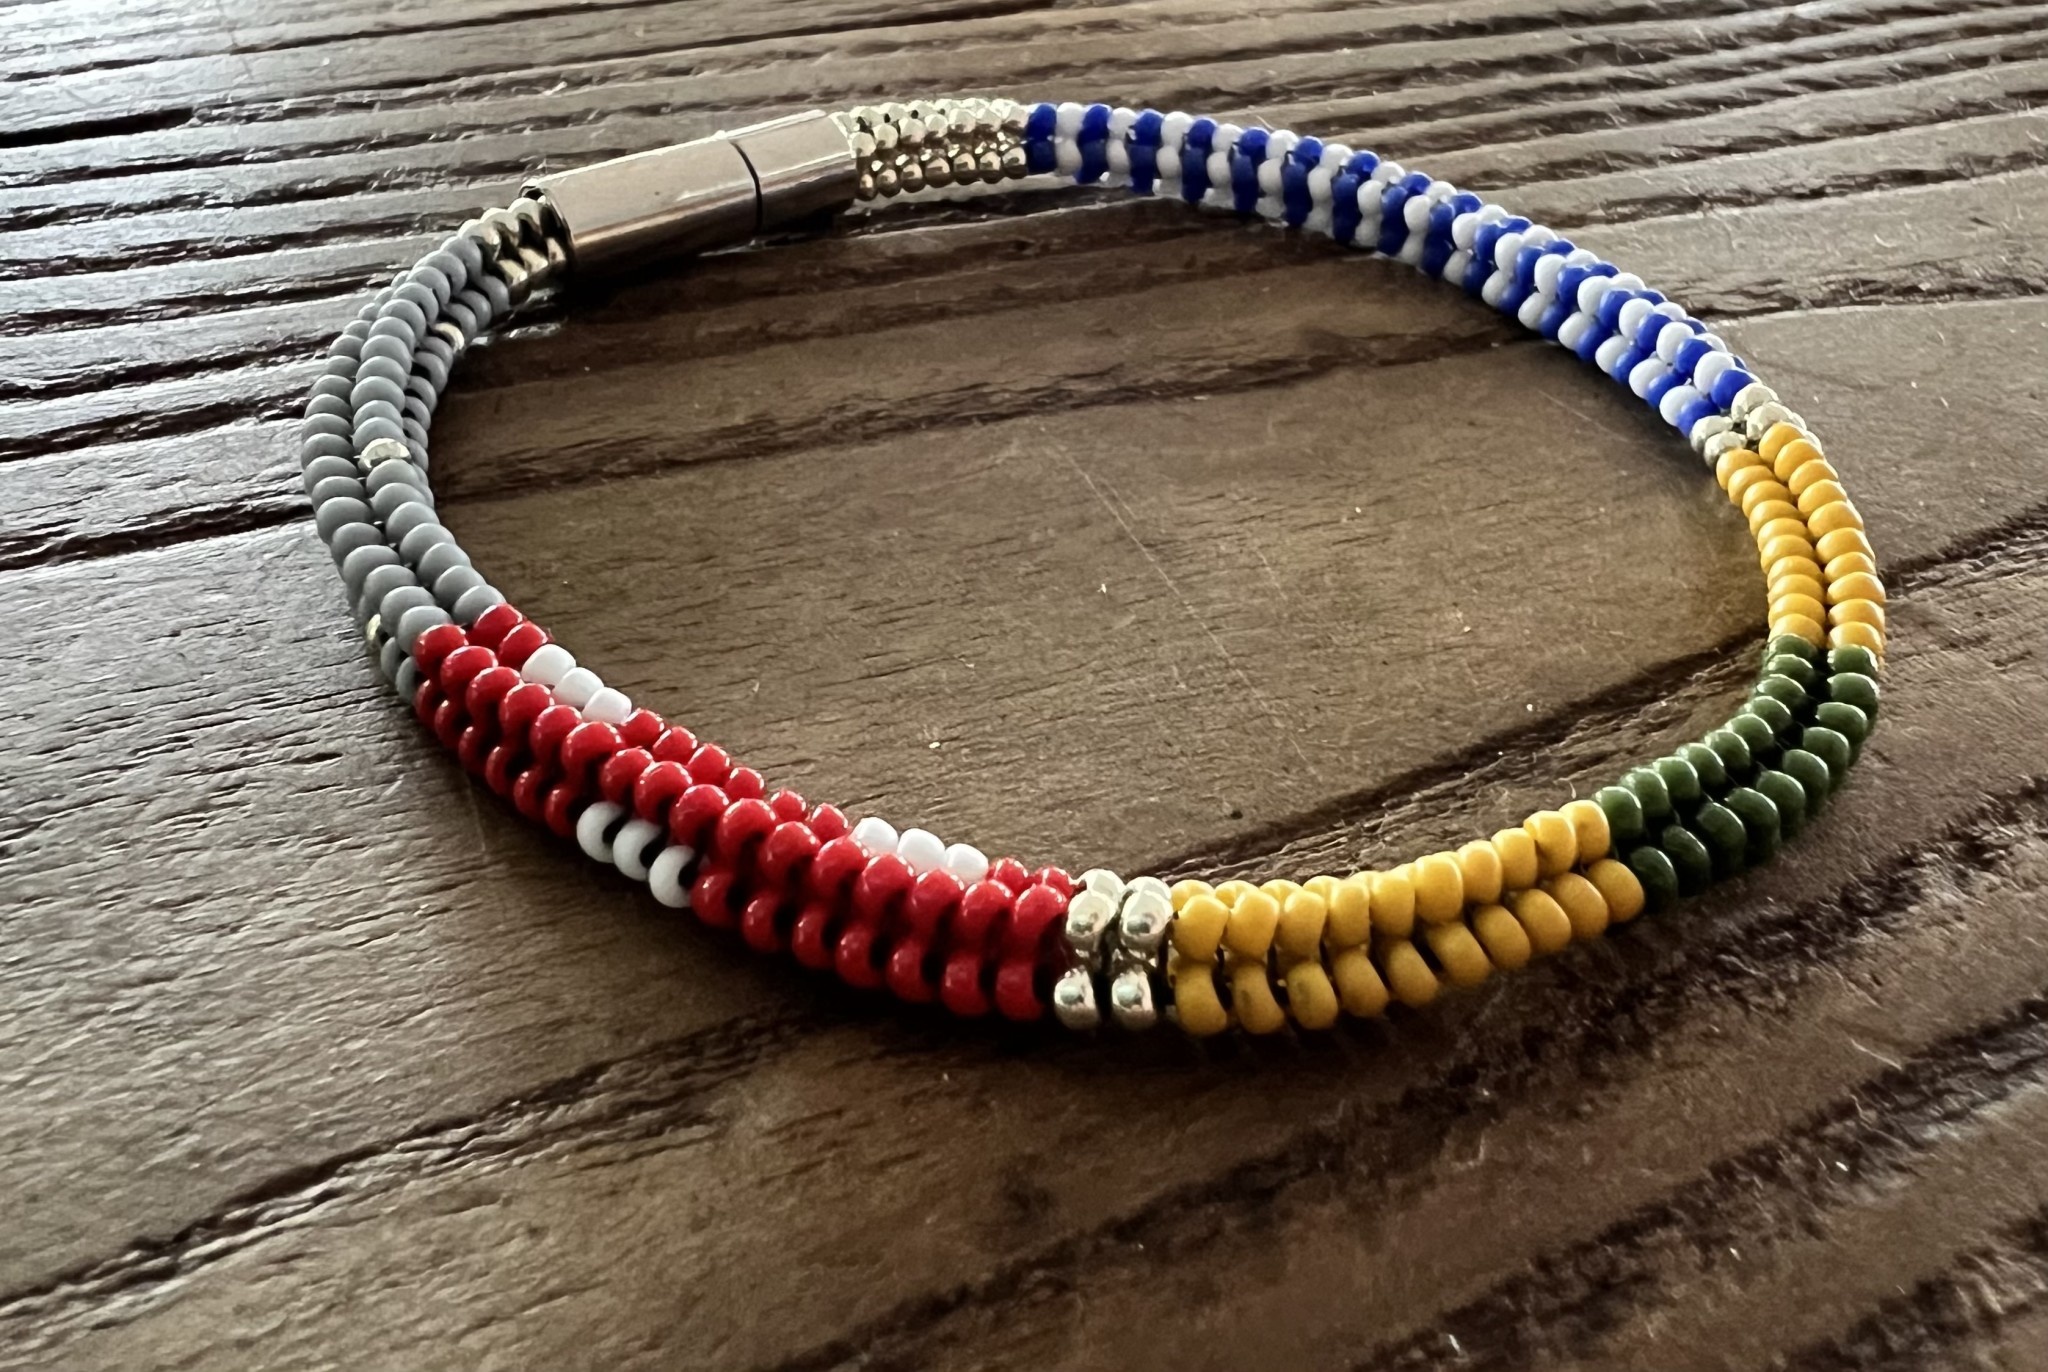 Buy Herringbone Bead Stitch Bracelet Tutorial Bead Weaving Online in India   Etsy